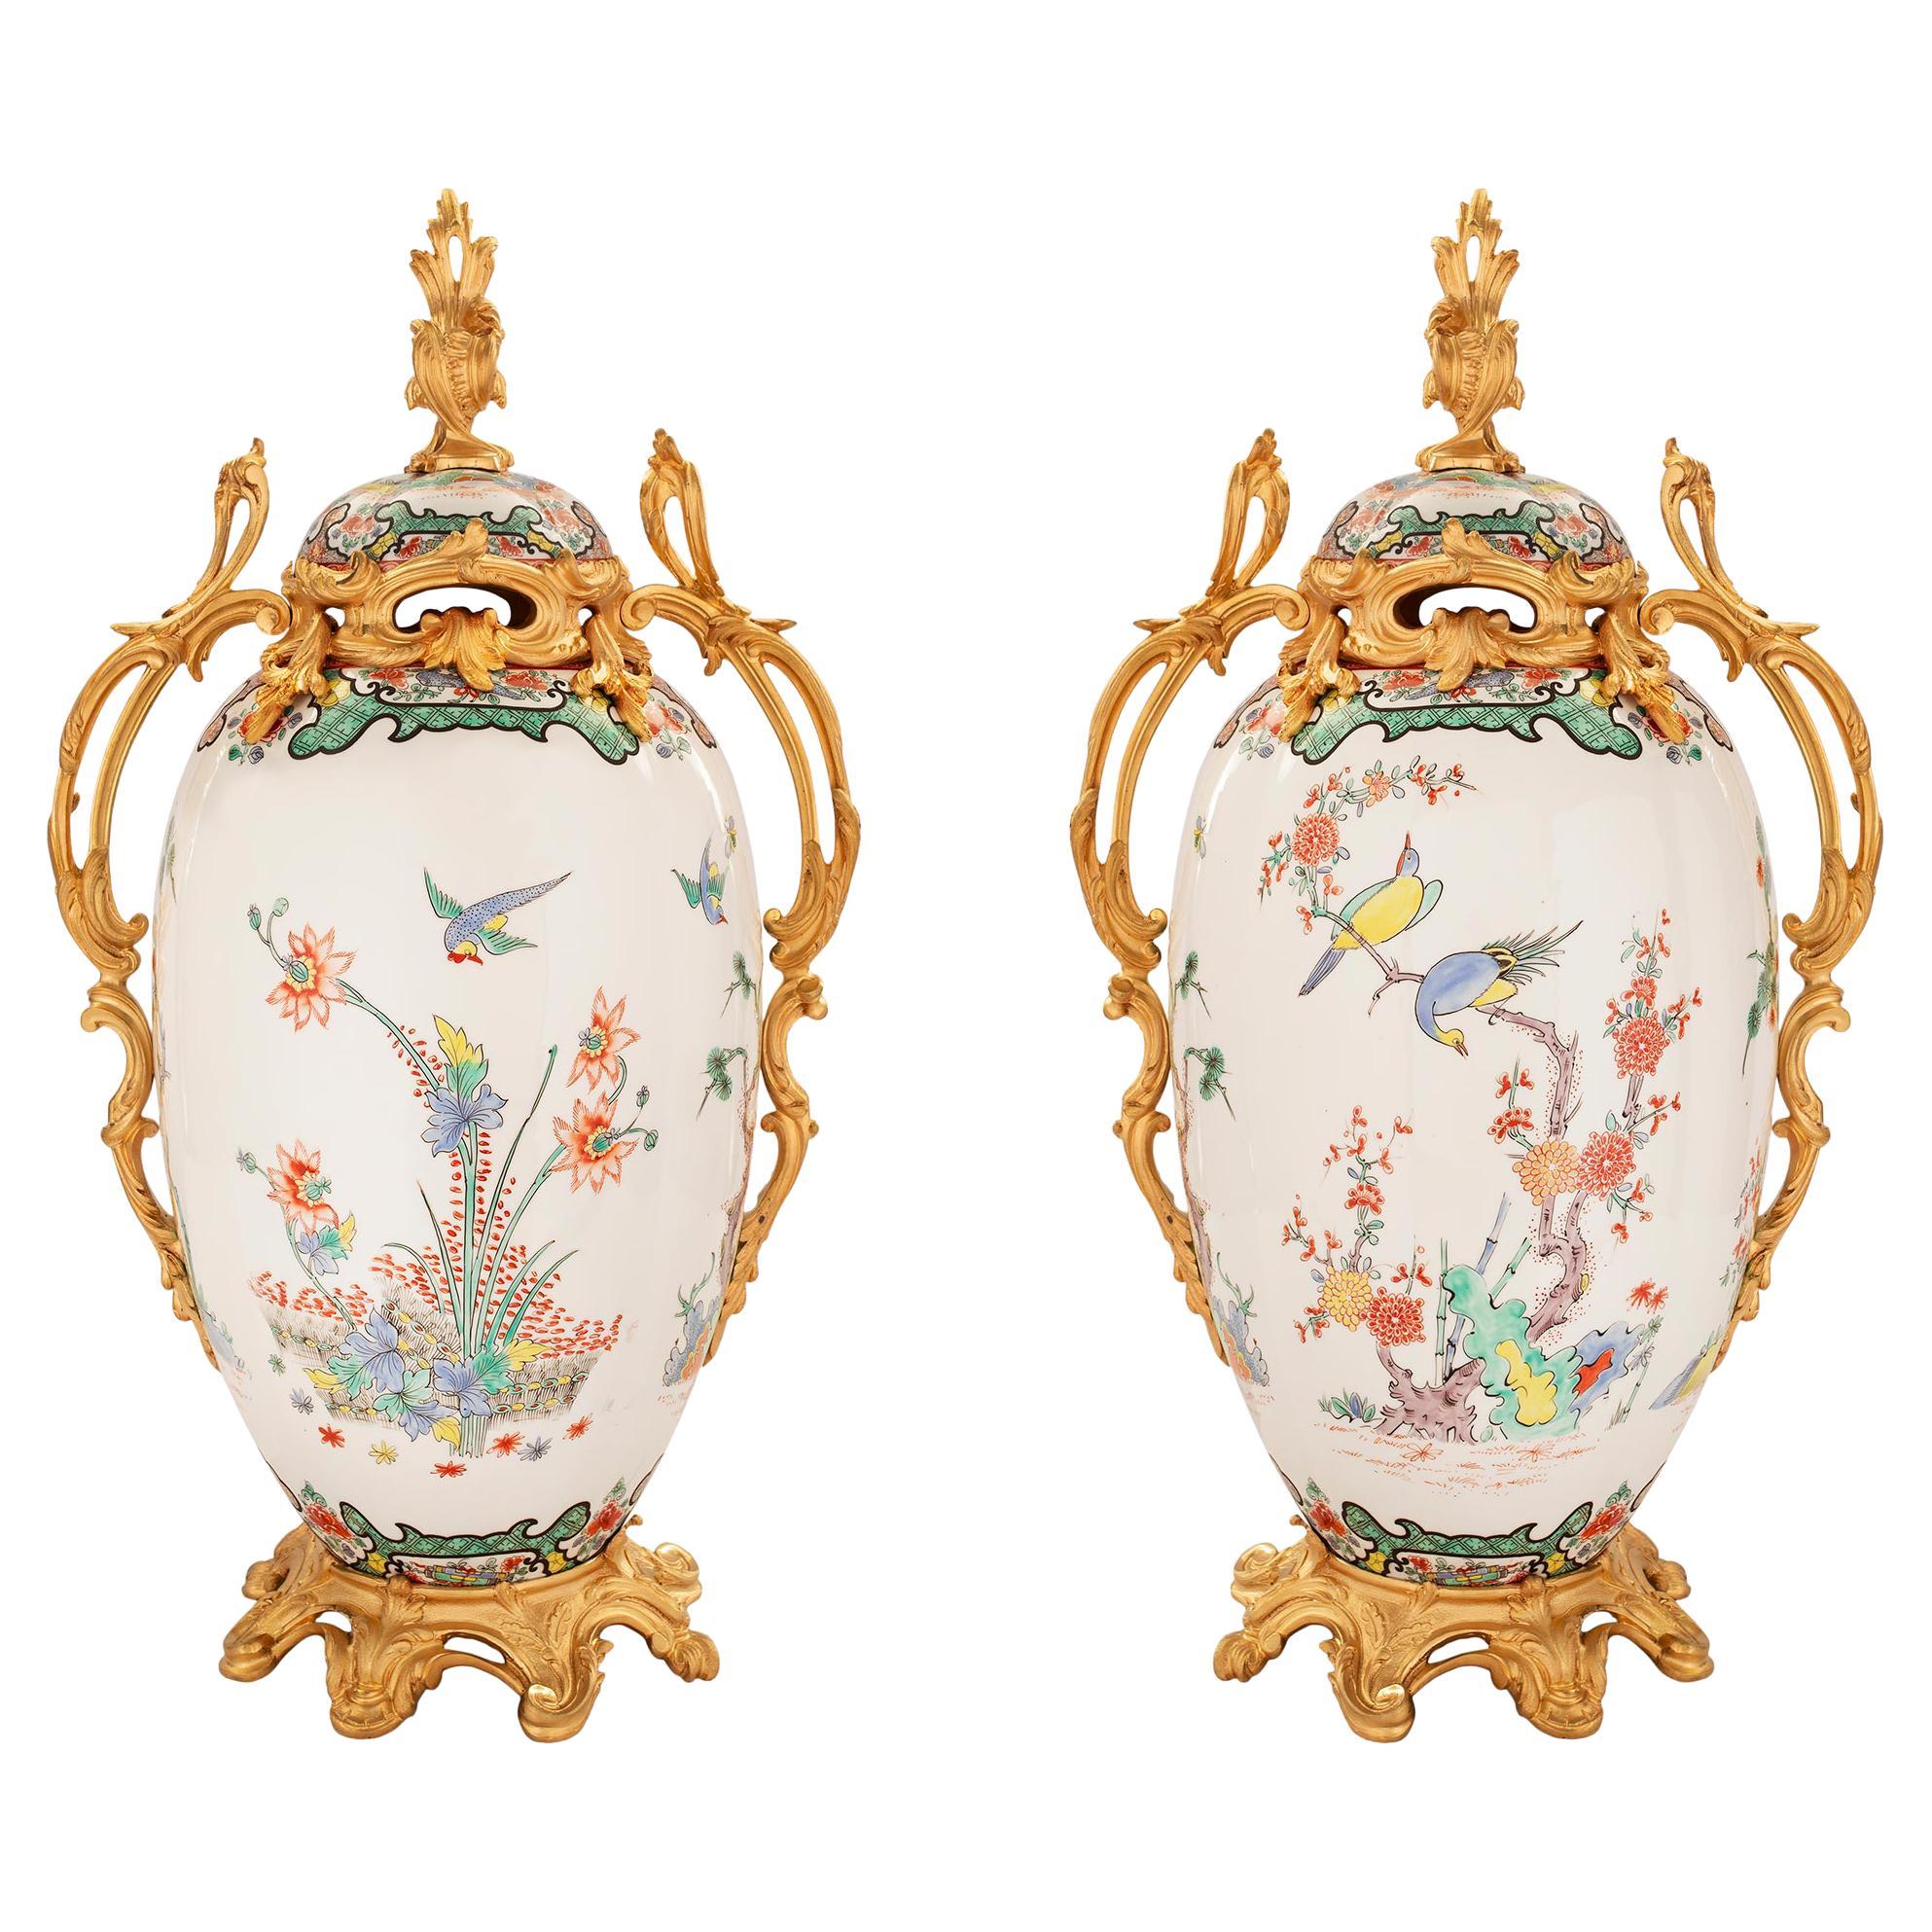 Paire d'urnes à couvercle en porcelaine de style Louis XV du 19ème siècle et ornementation de bronze doré